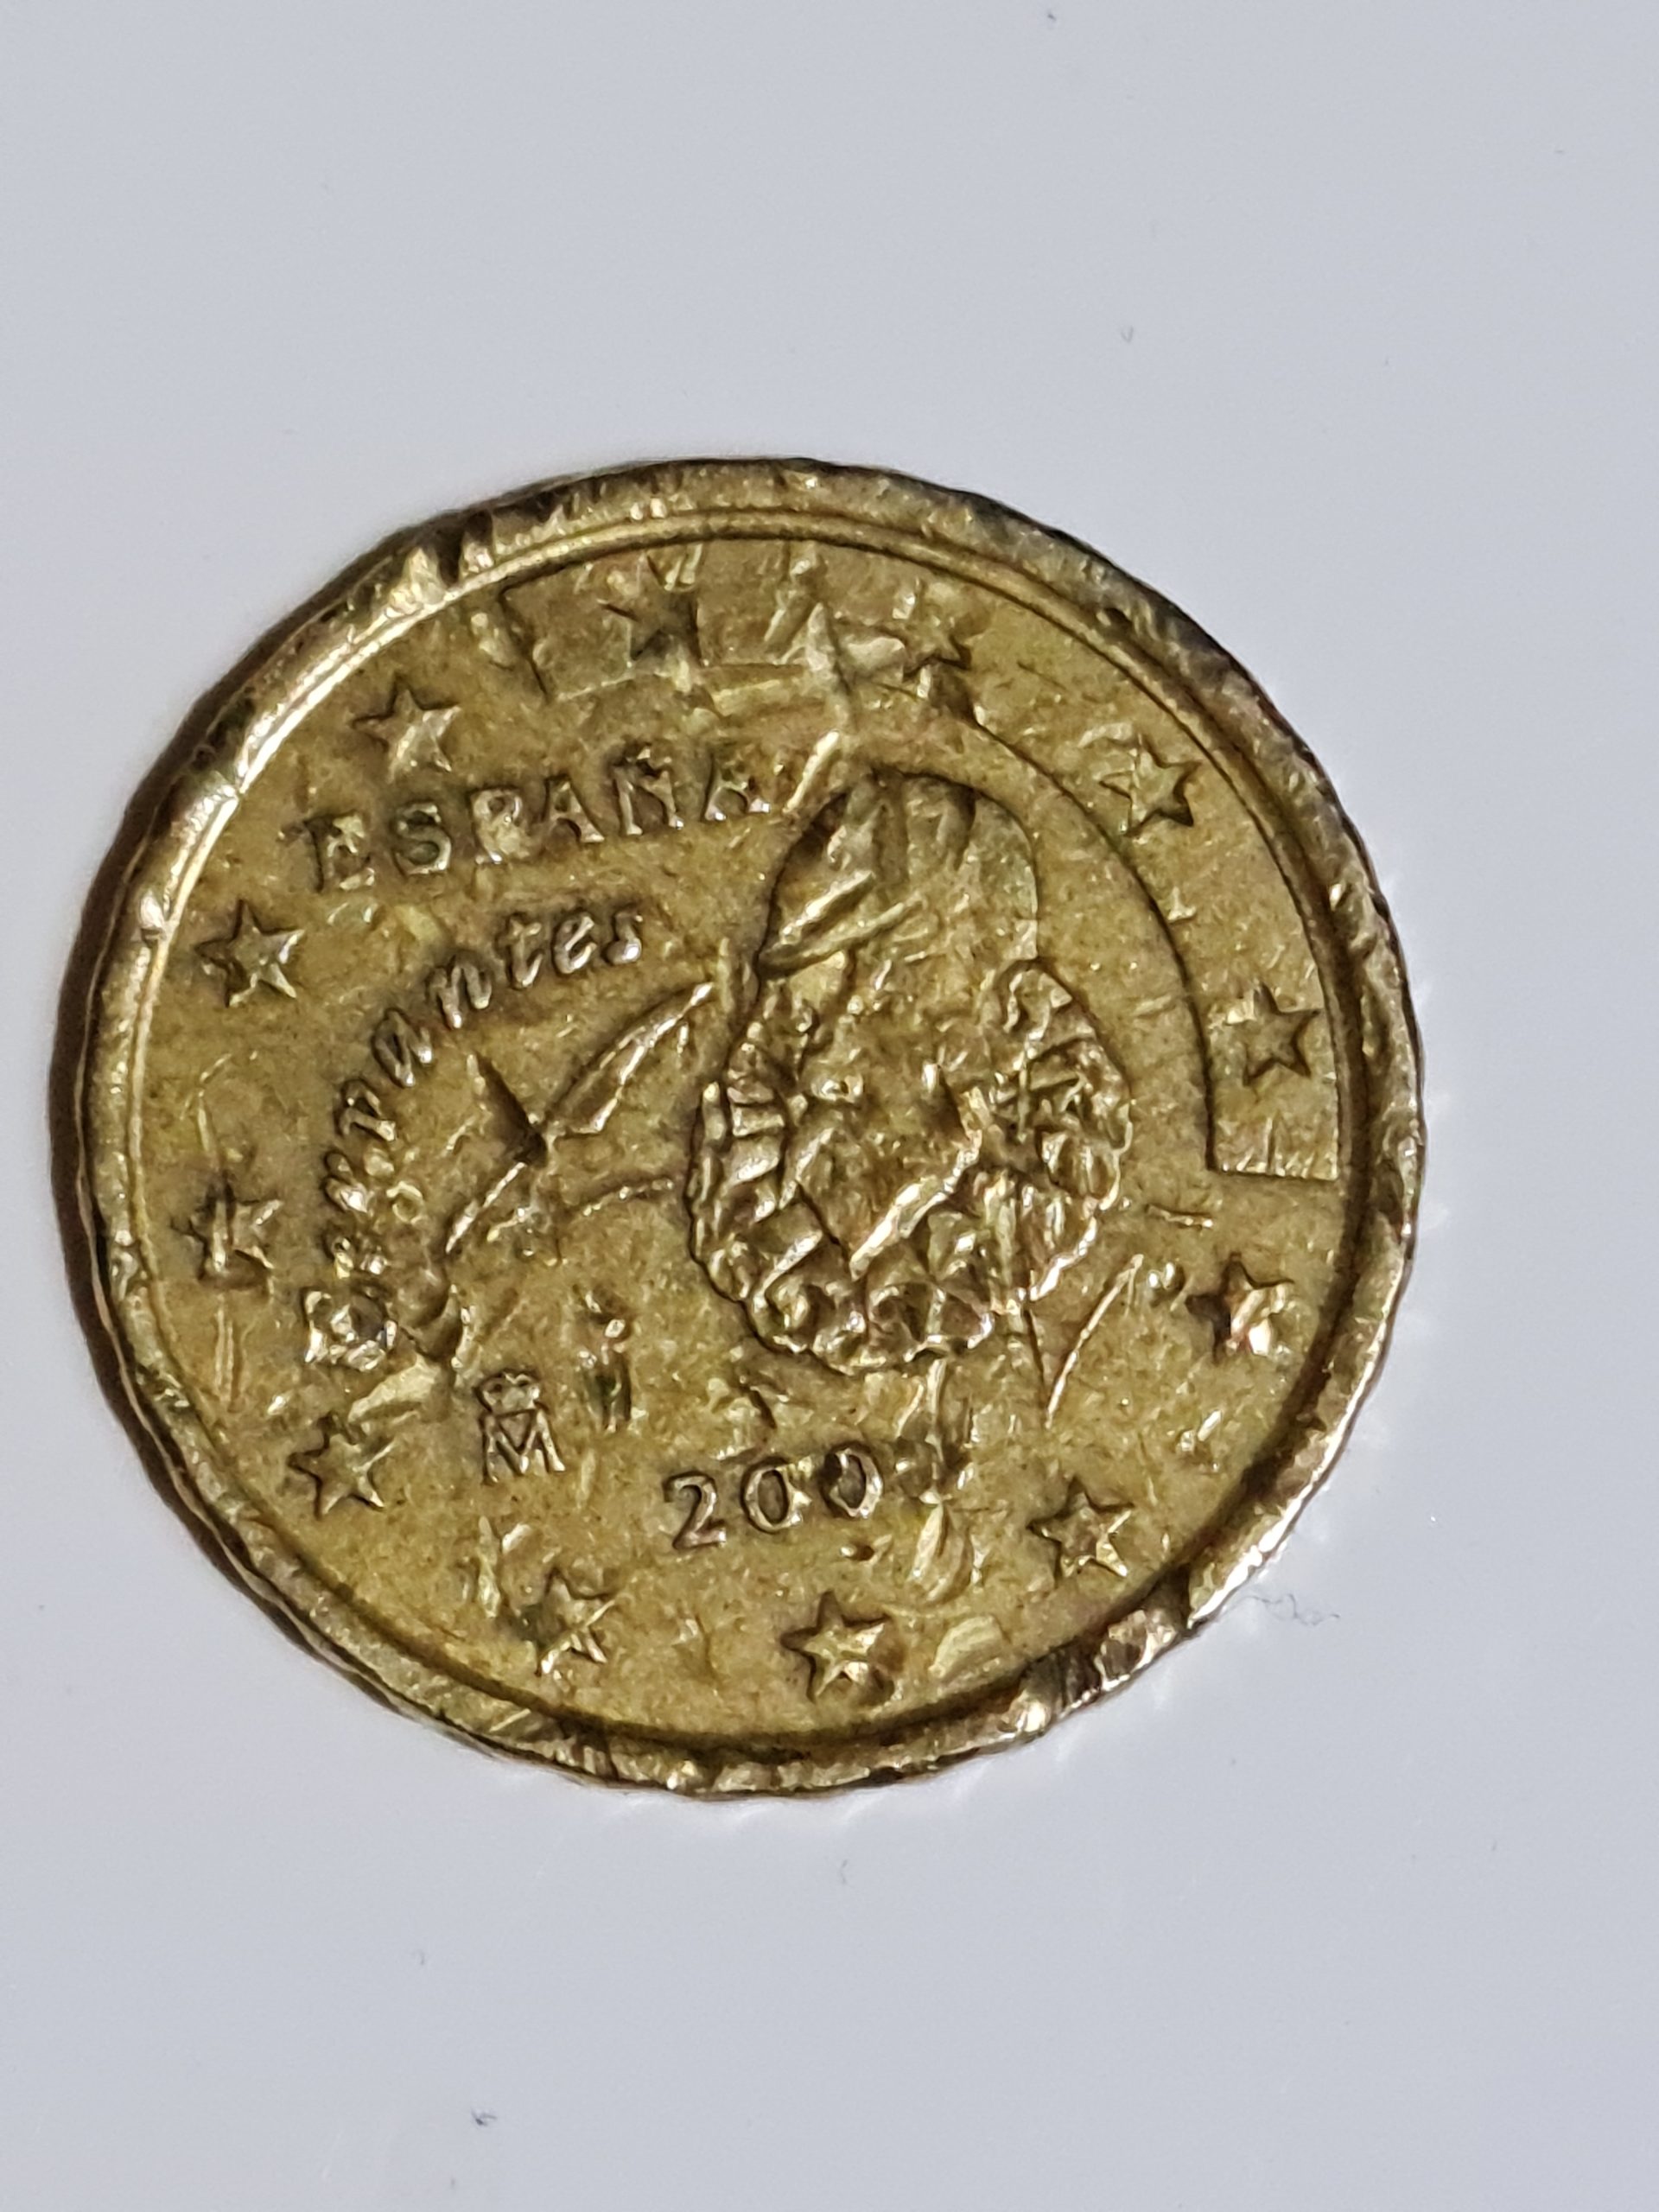 Mint-made errors – Euromünzen mit Fehlprägungen